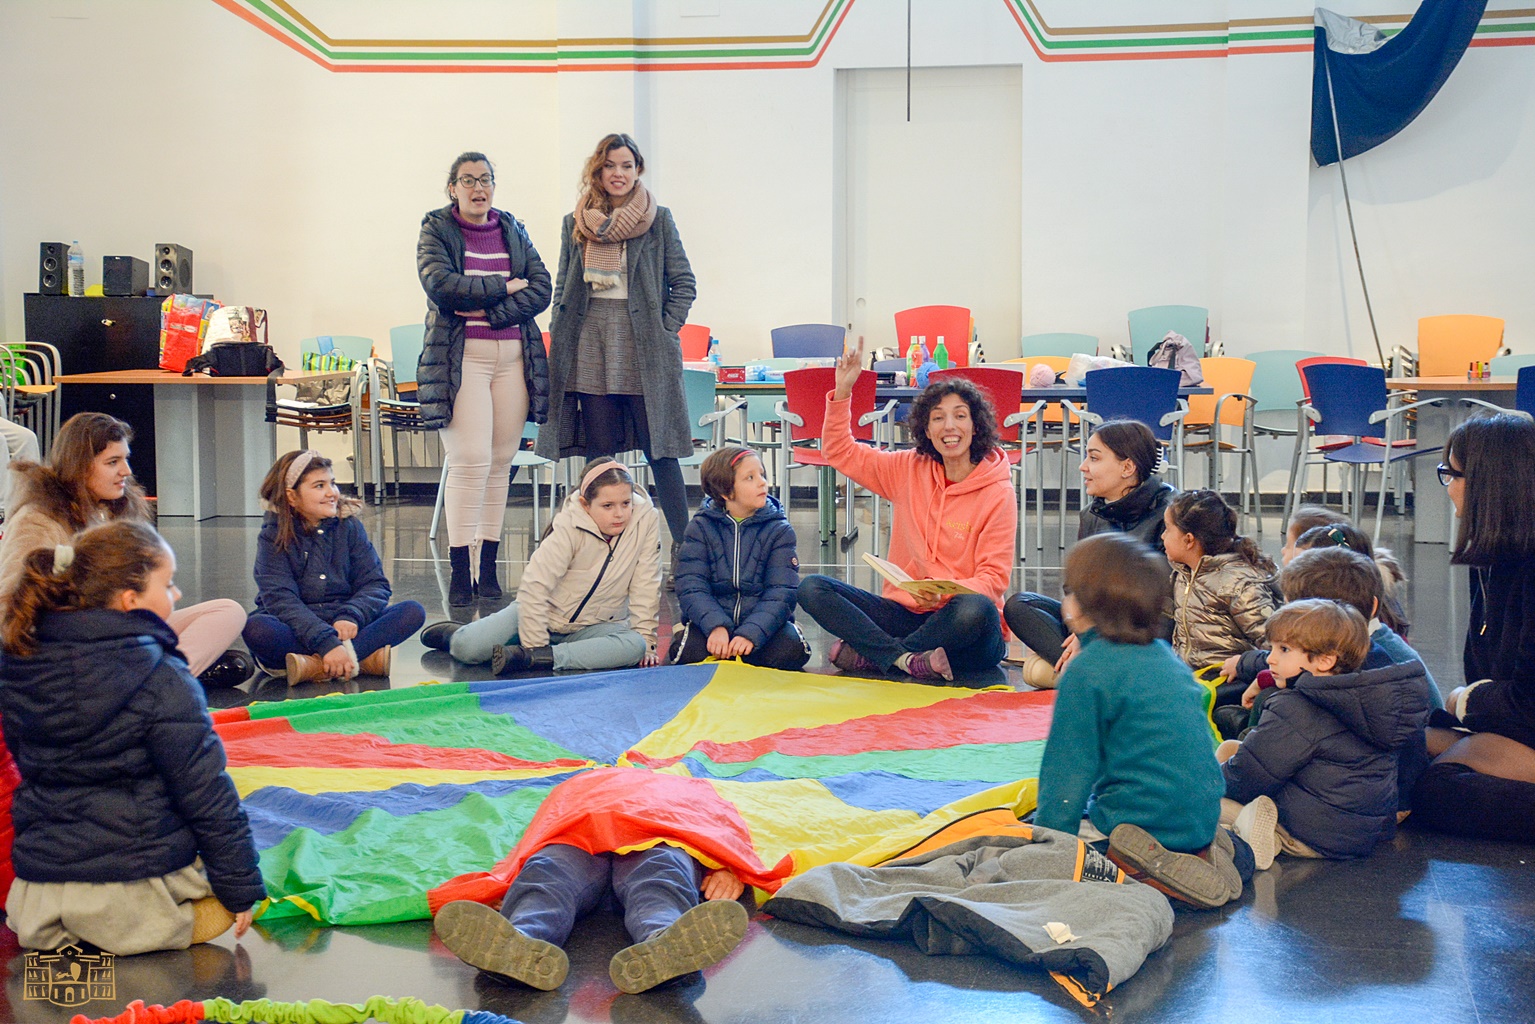 
Los escolares de Tomelloso celebran el Día de la Paz con dos interesantes actividades
